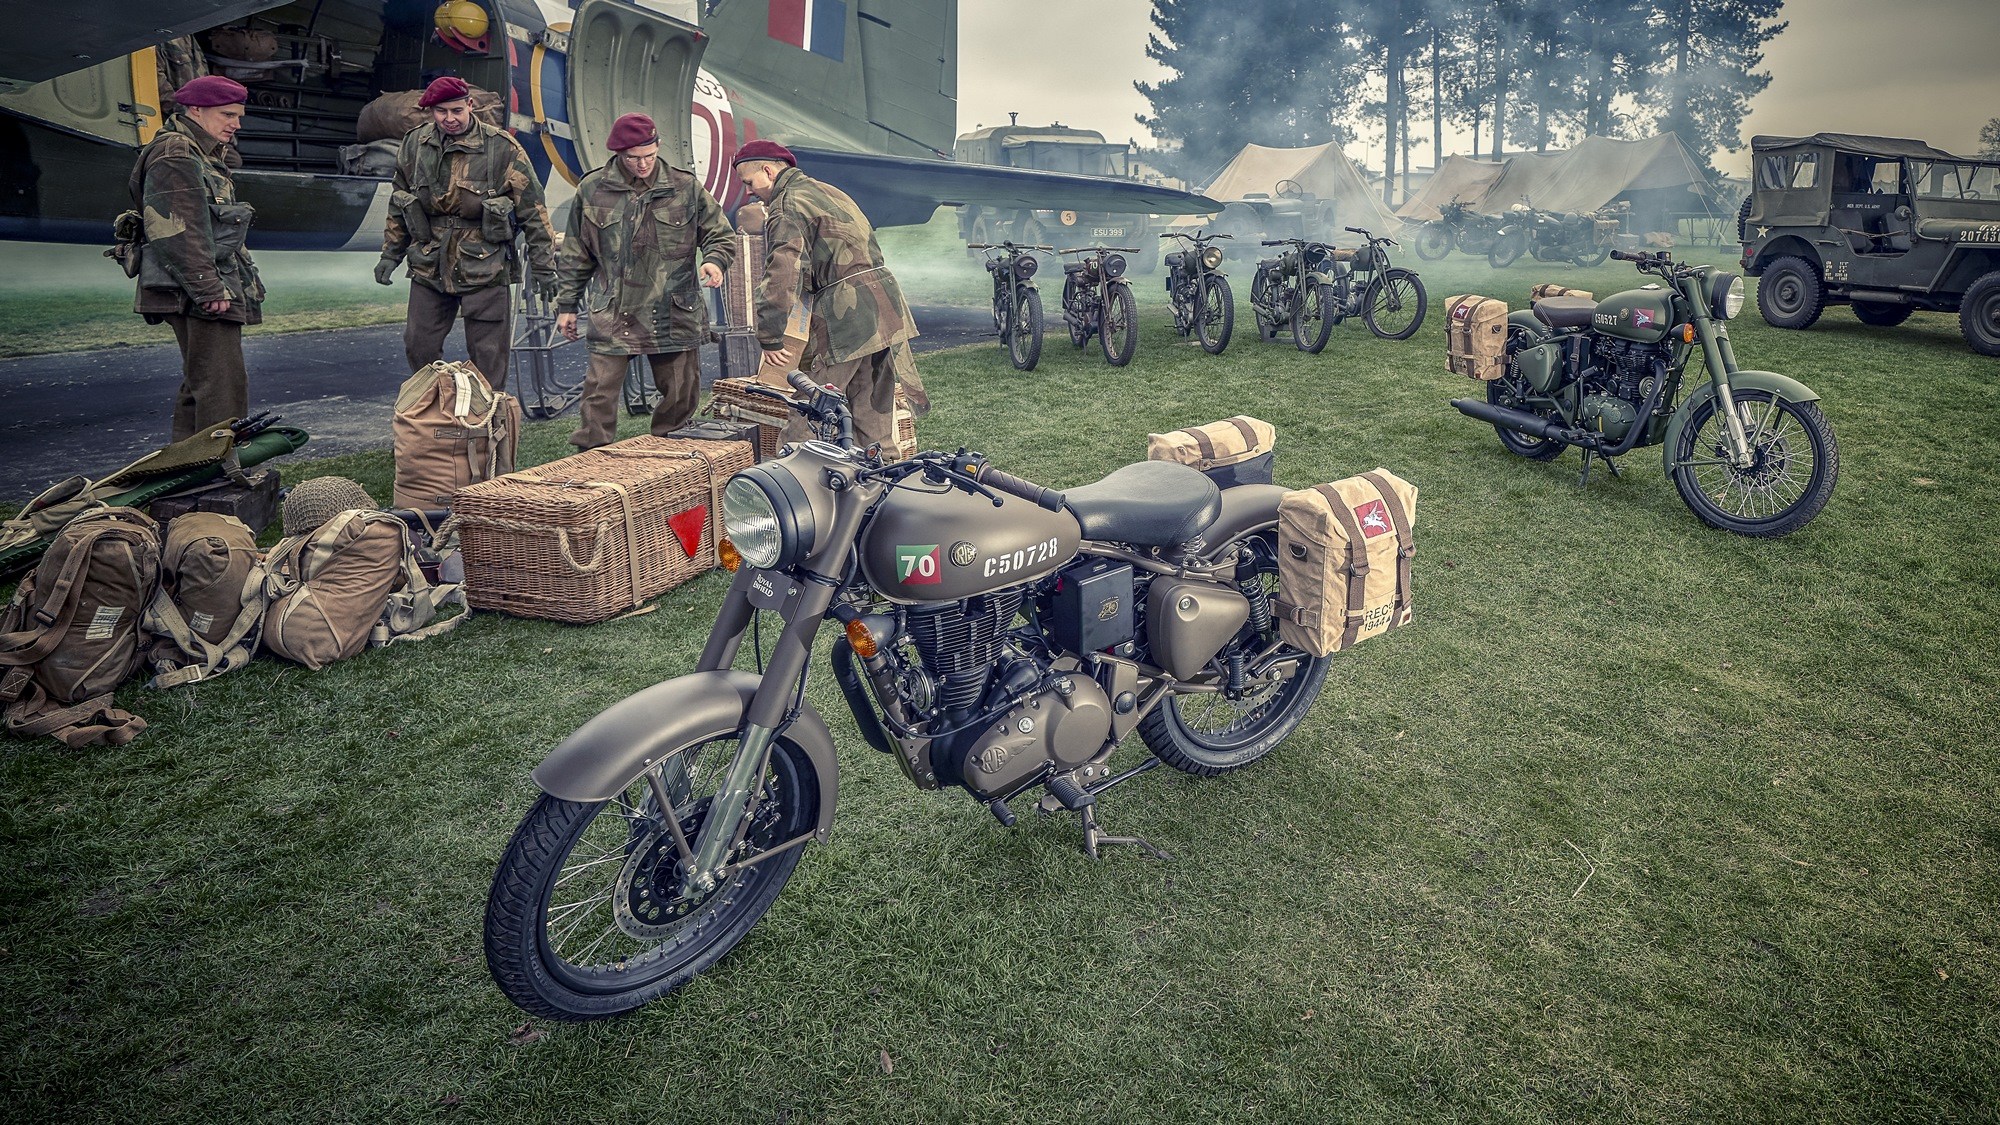 royal enfield classic 500 fondos de pantalla hd,vehículo de motor,motocicleta,vehículo,militar,ejército